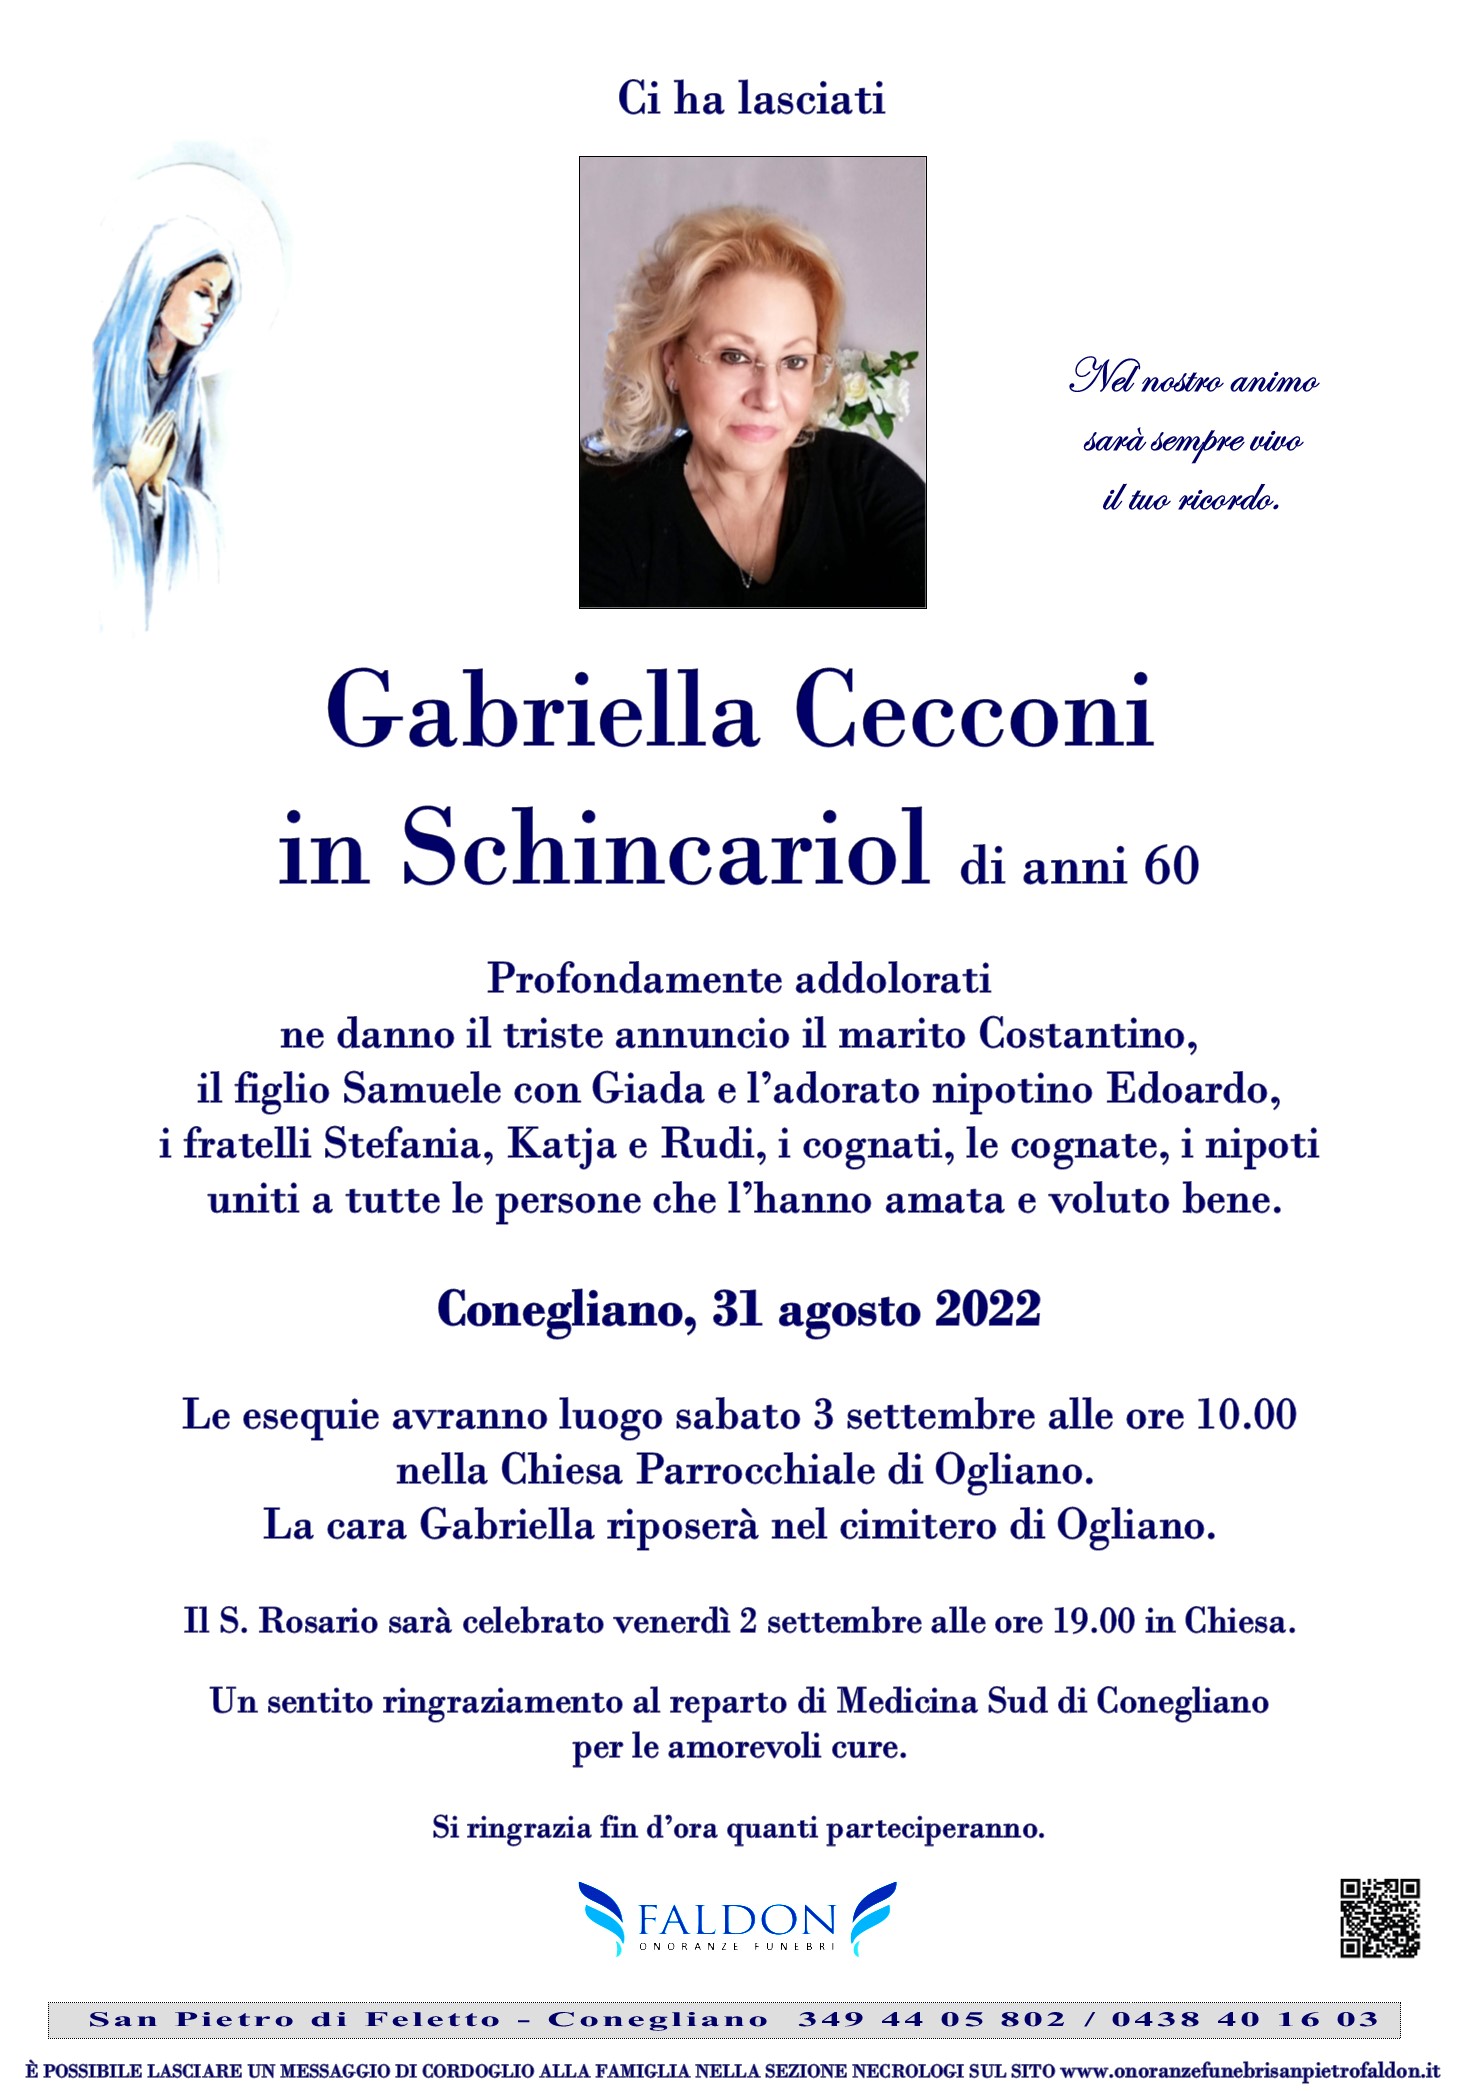 Gabriella Cecconi